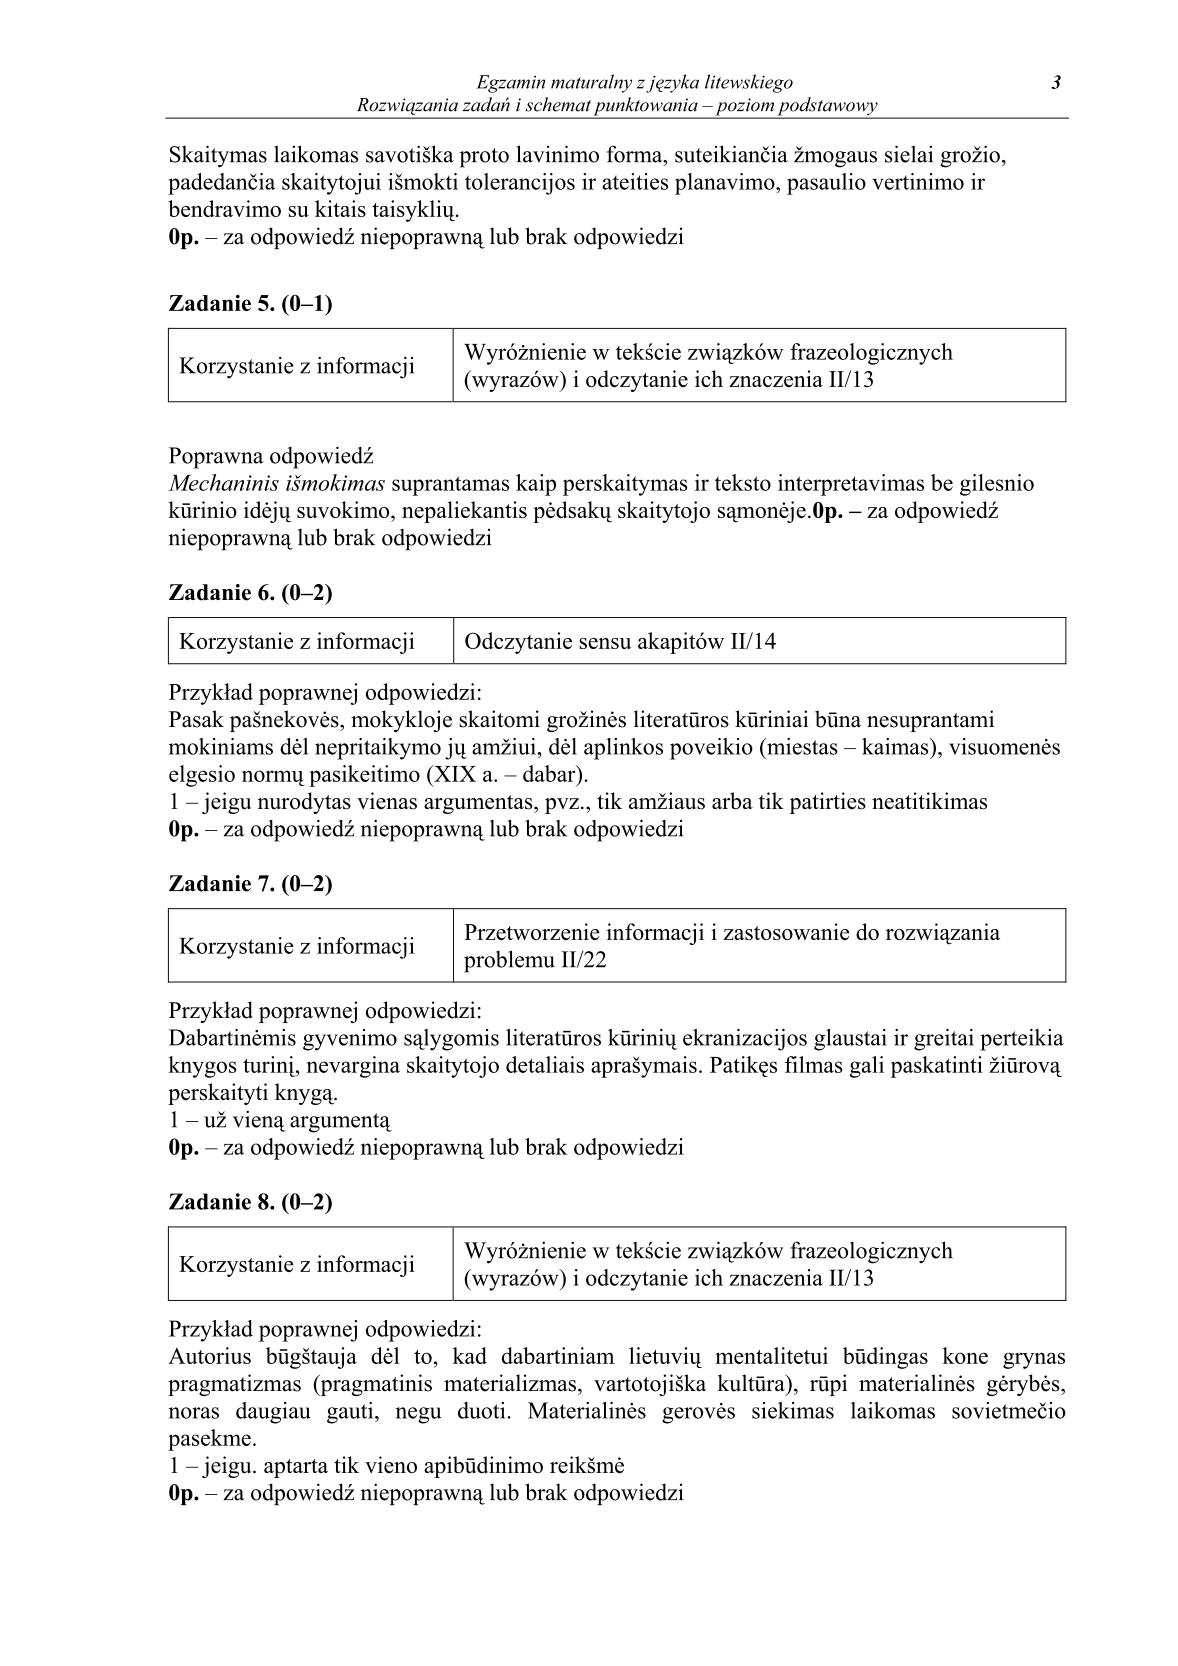 odpowiedzi-jezyk-litewski-poziom-podstawowy-matura-2014-str.3